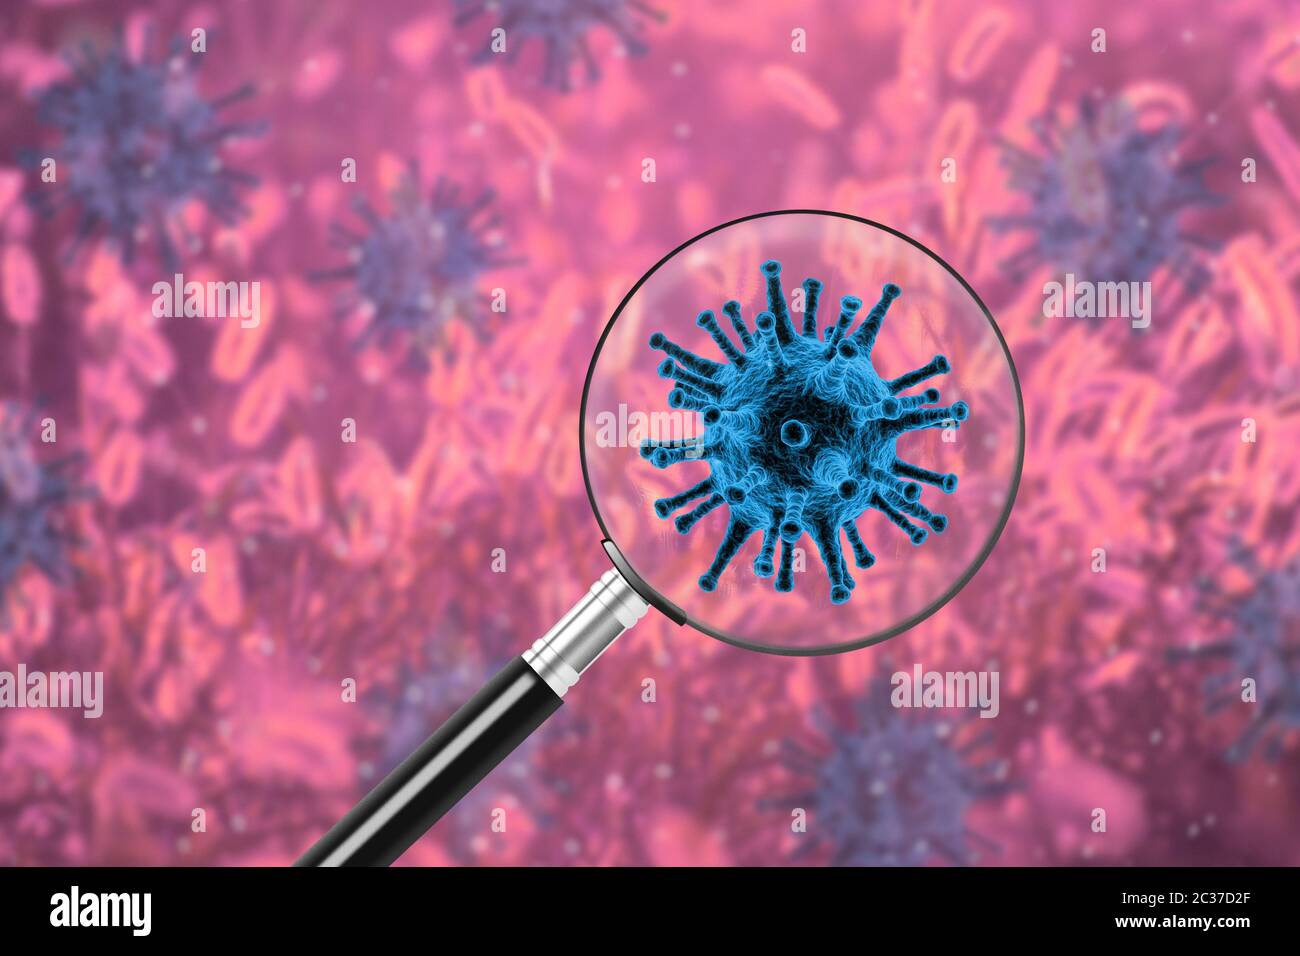 Concetto di epidemia pandemica con lente d'ingrandimento sul batterio del virus, concetto di epidemia di coronavirus 19, illustrazione moderna della scienza della biotecnologia Foto Stock